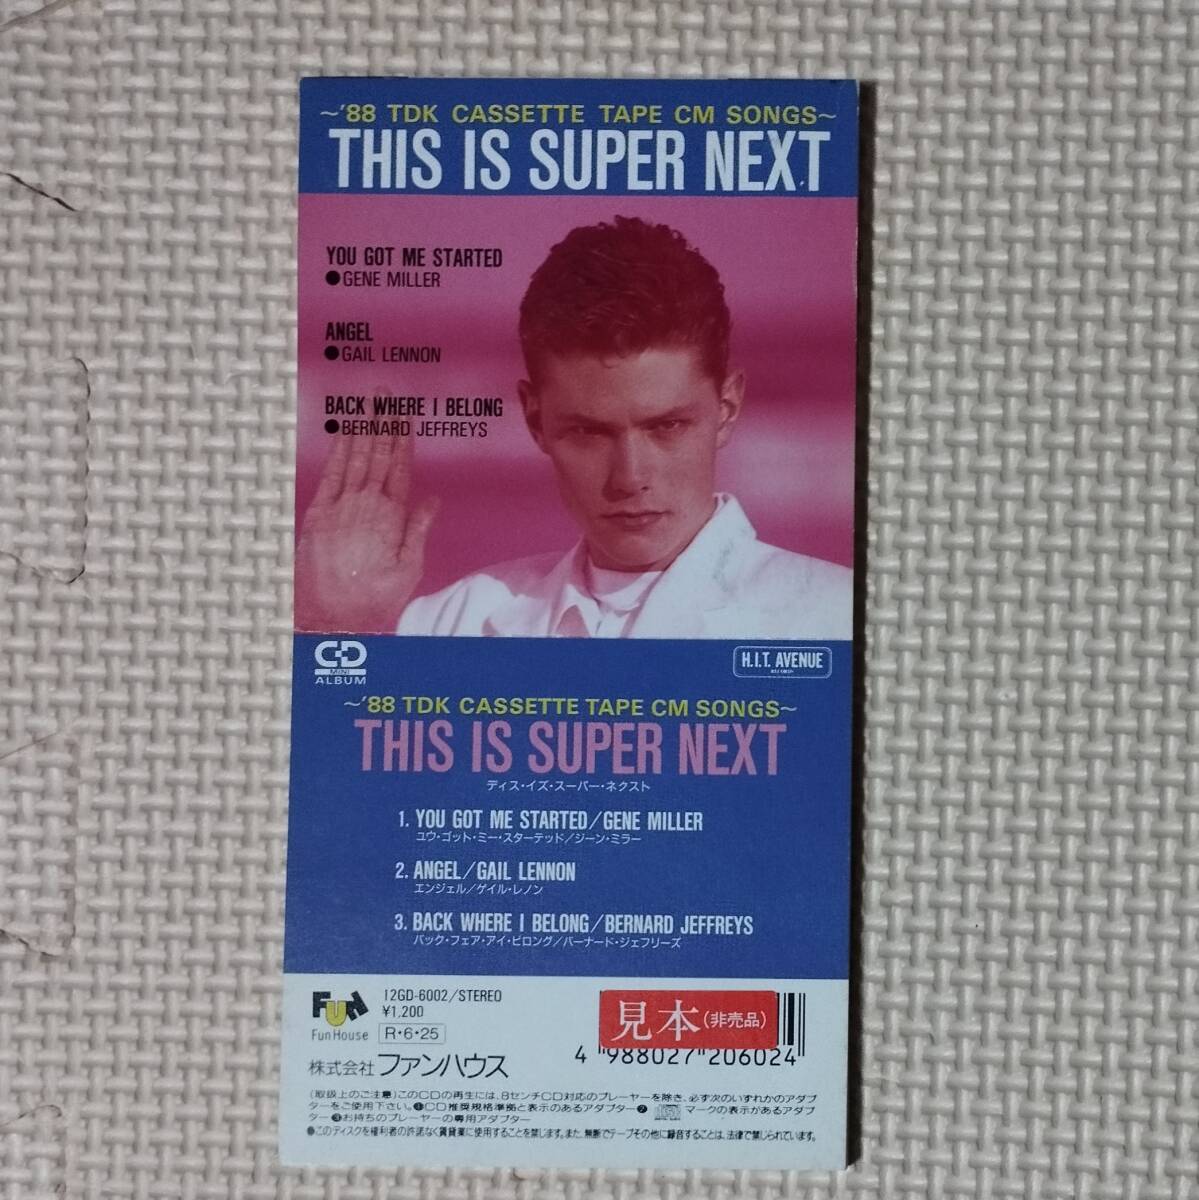 8cmCDシングル THIS IS SUPER NEXT '88 TDK カセットテープ CM SONGS 見本 ジーン・ミラー ゲイル・レノン バーナード・ジェフリーズ_画像1